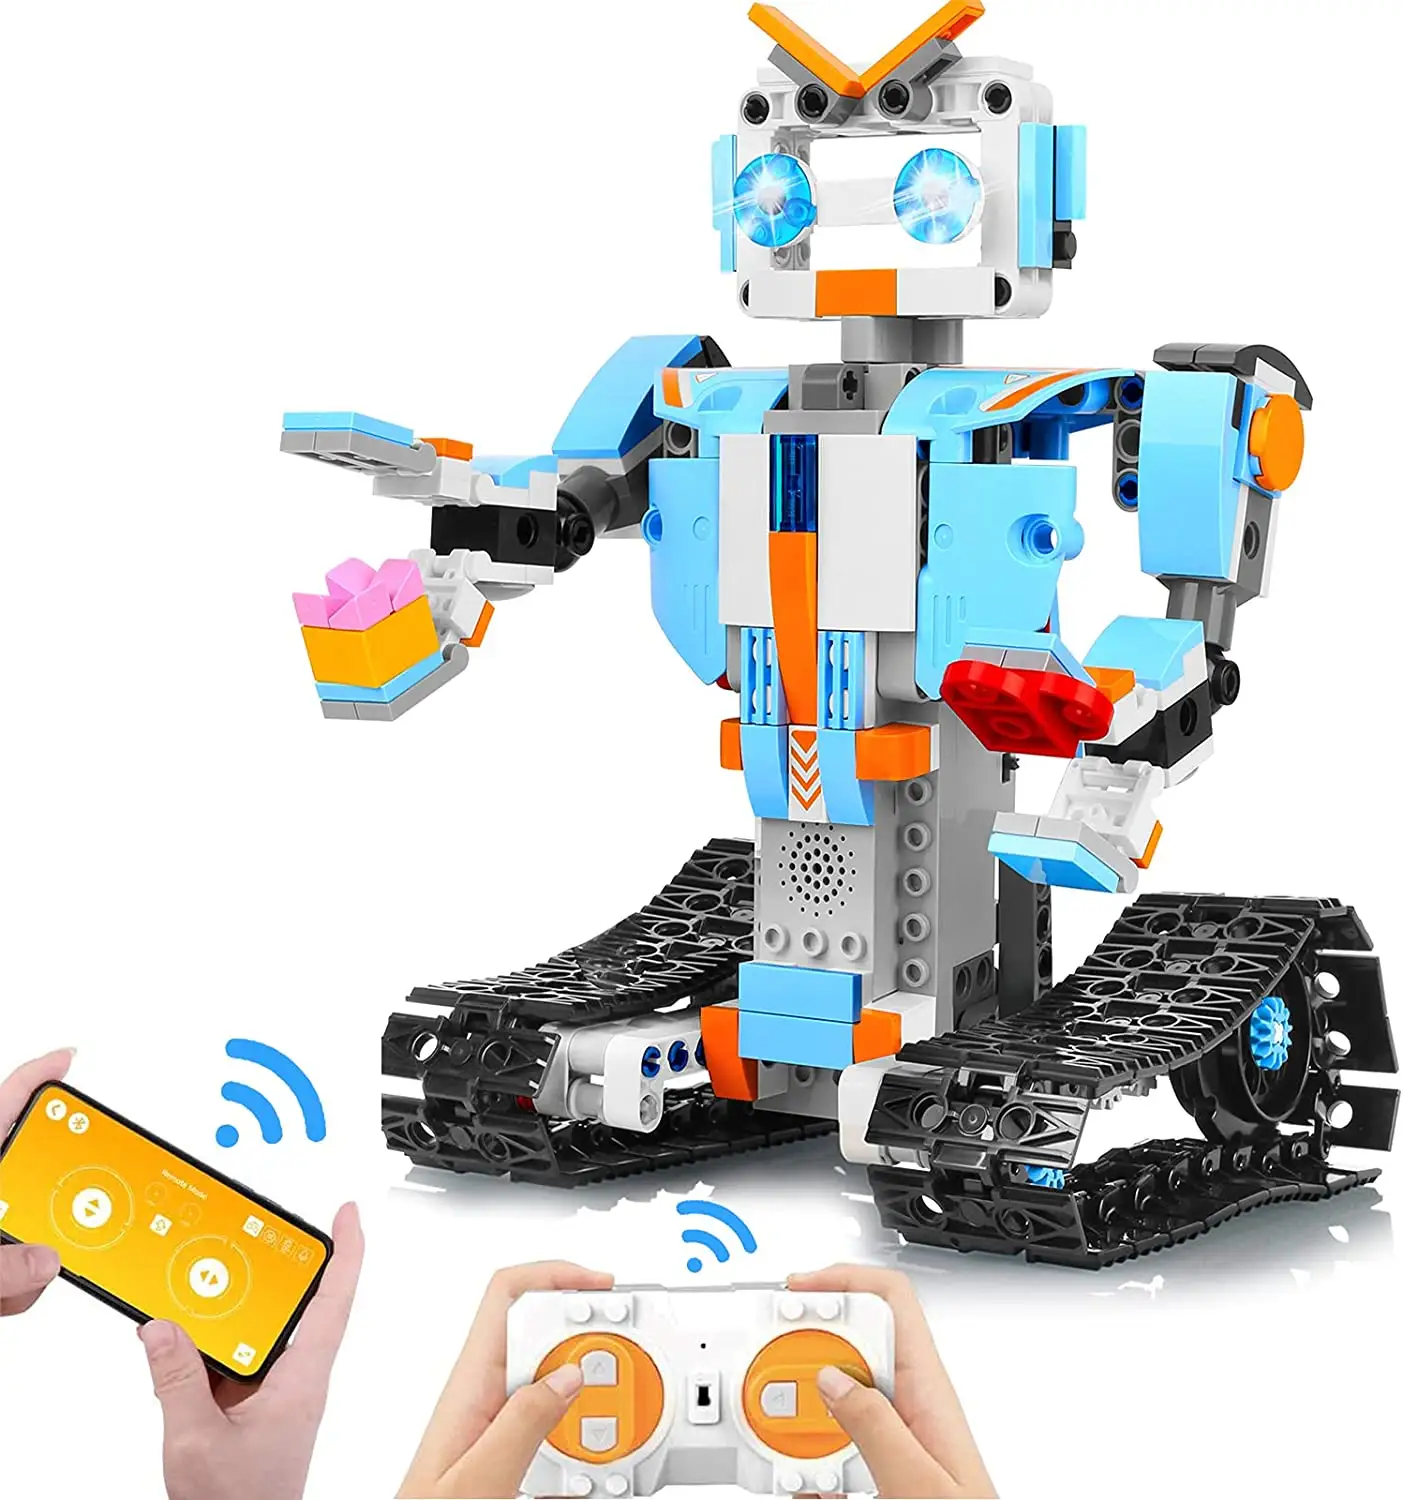 Строительные блоки, наборы игрушечных роботов на радиоуправлении, робот с дистанционным управлением и управлением через приложение, строительные комплекты, строительные игрушки для детей